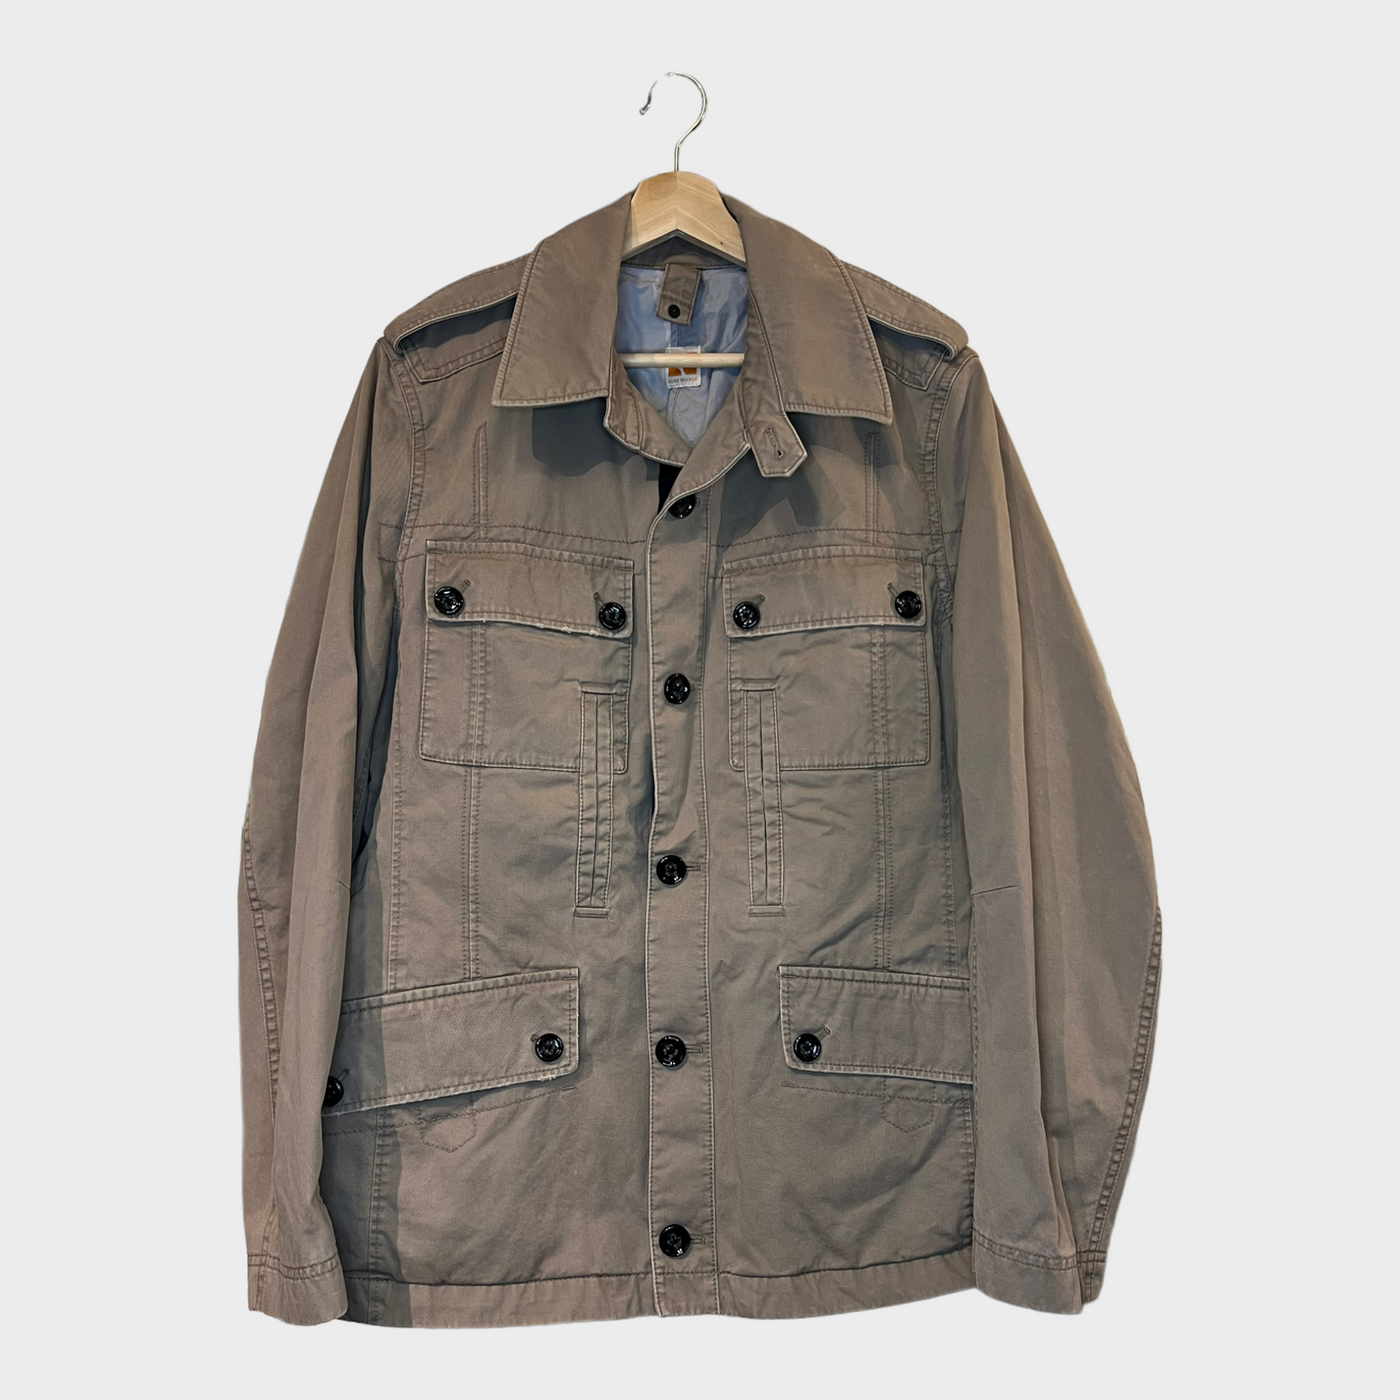 HUGO BOSS ORANGE Jacket with many functional pockets - Front